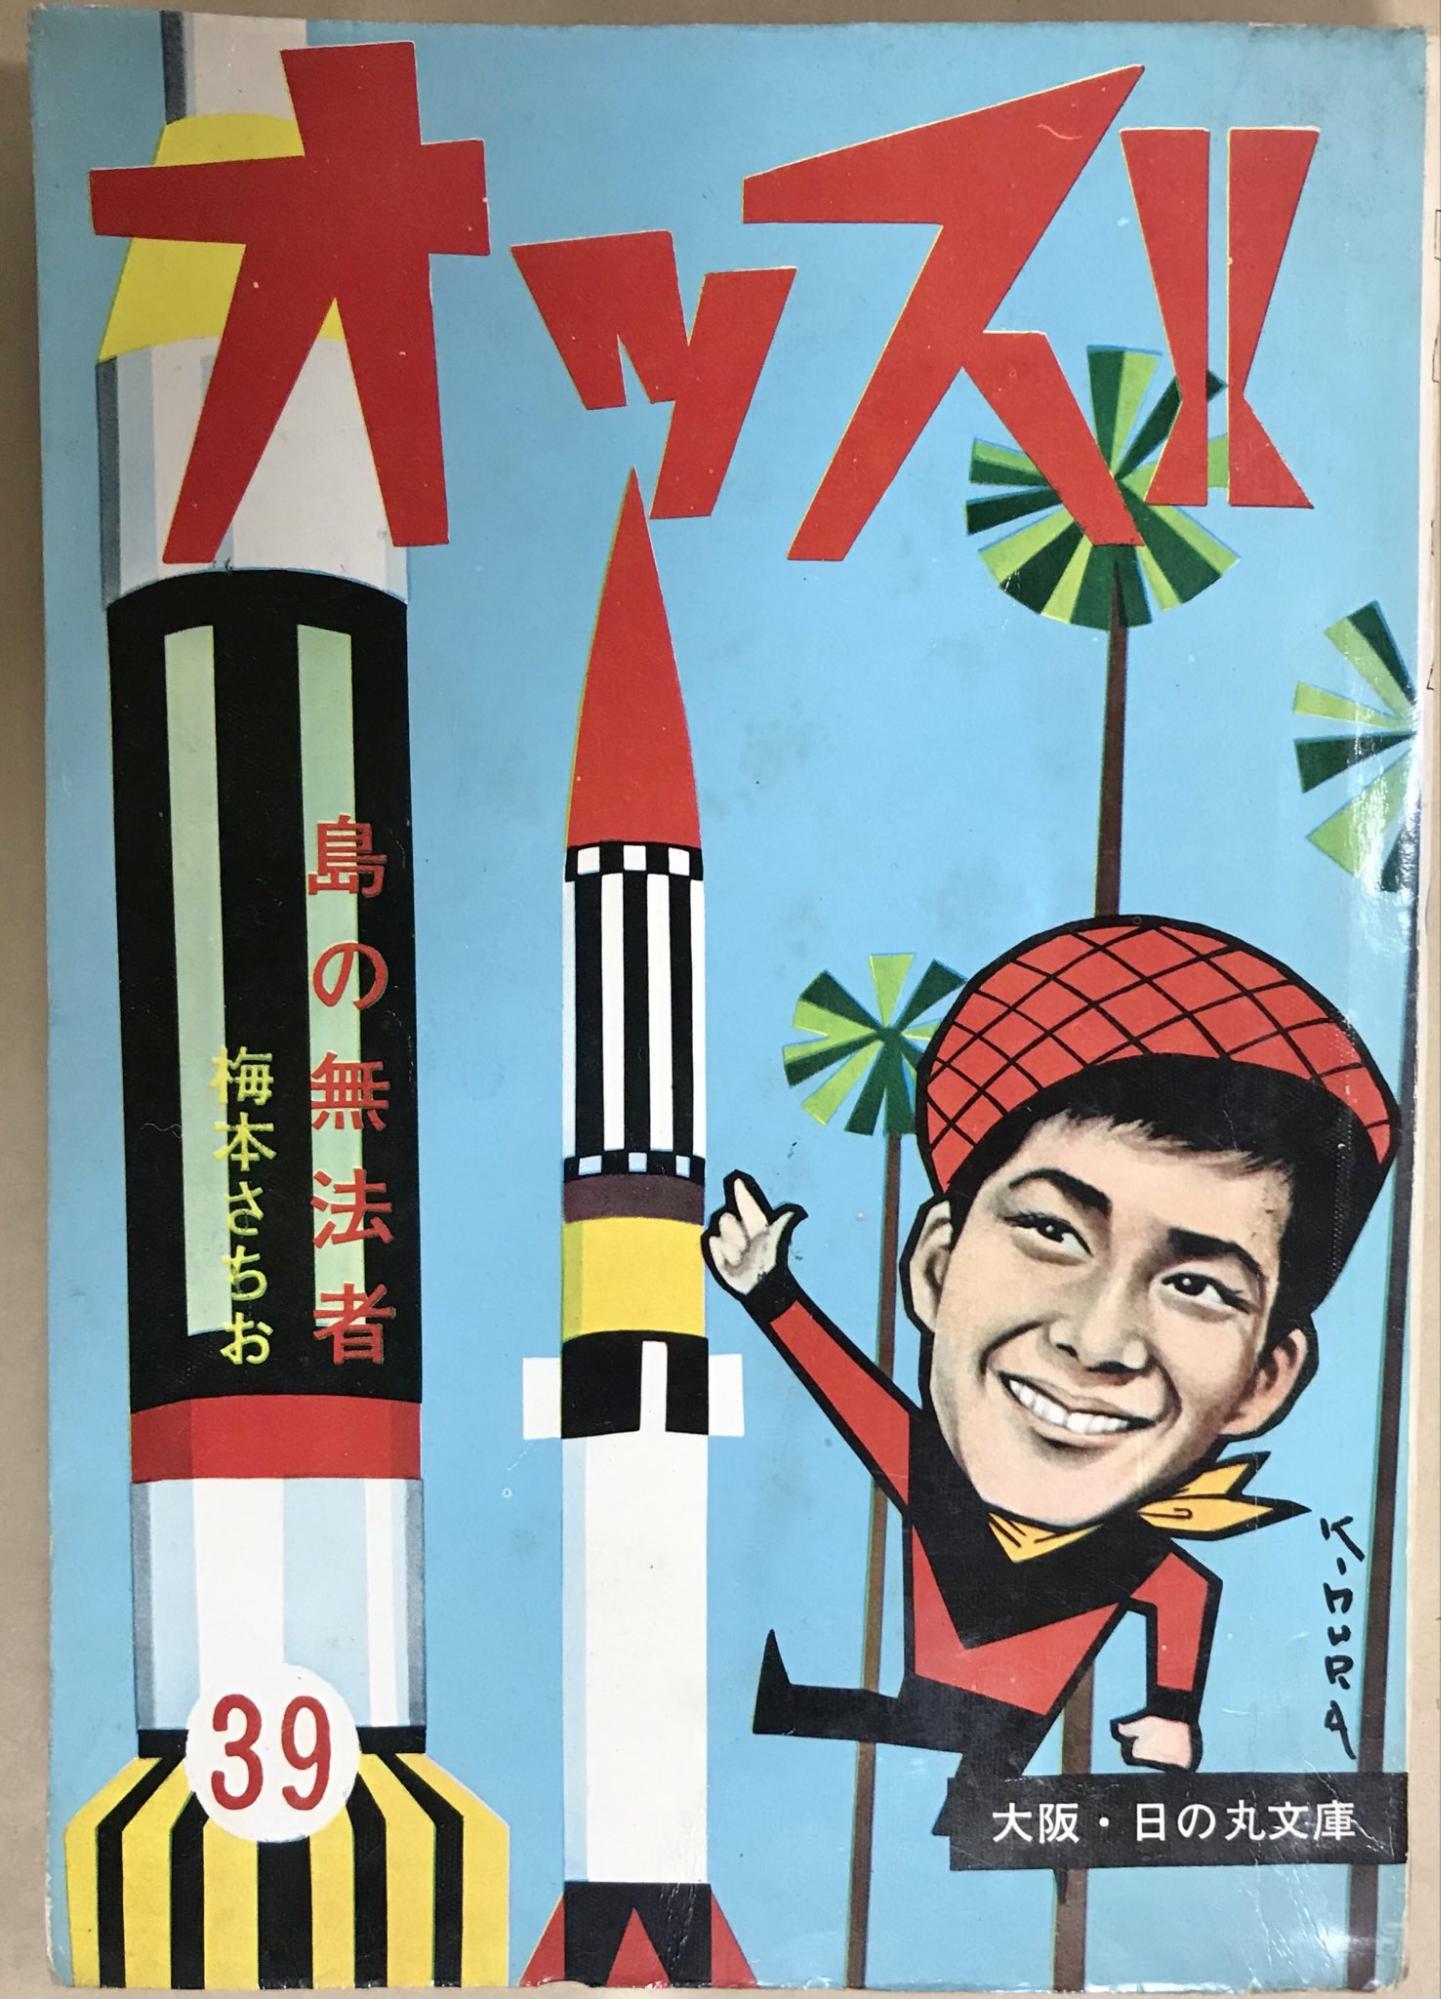 昭和40年代、少年漫画週刊誌が隆盛を極め始めた時代を支えた漫画家